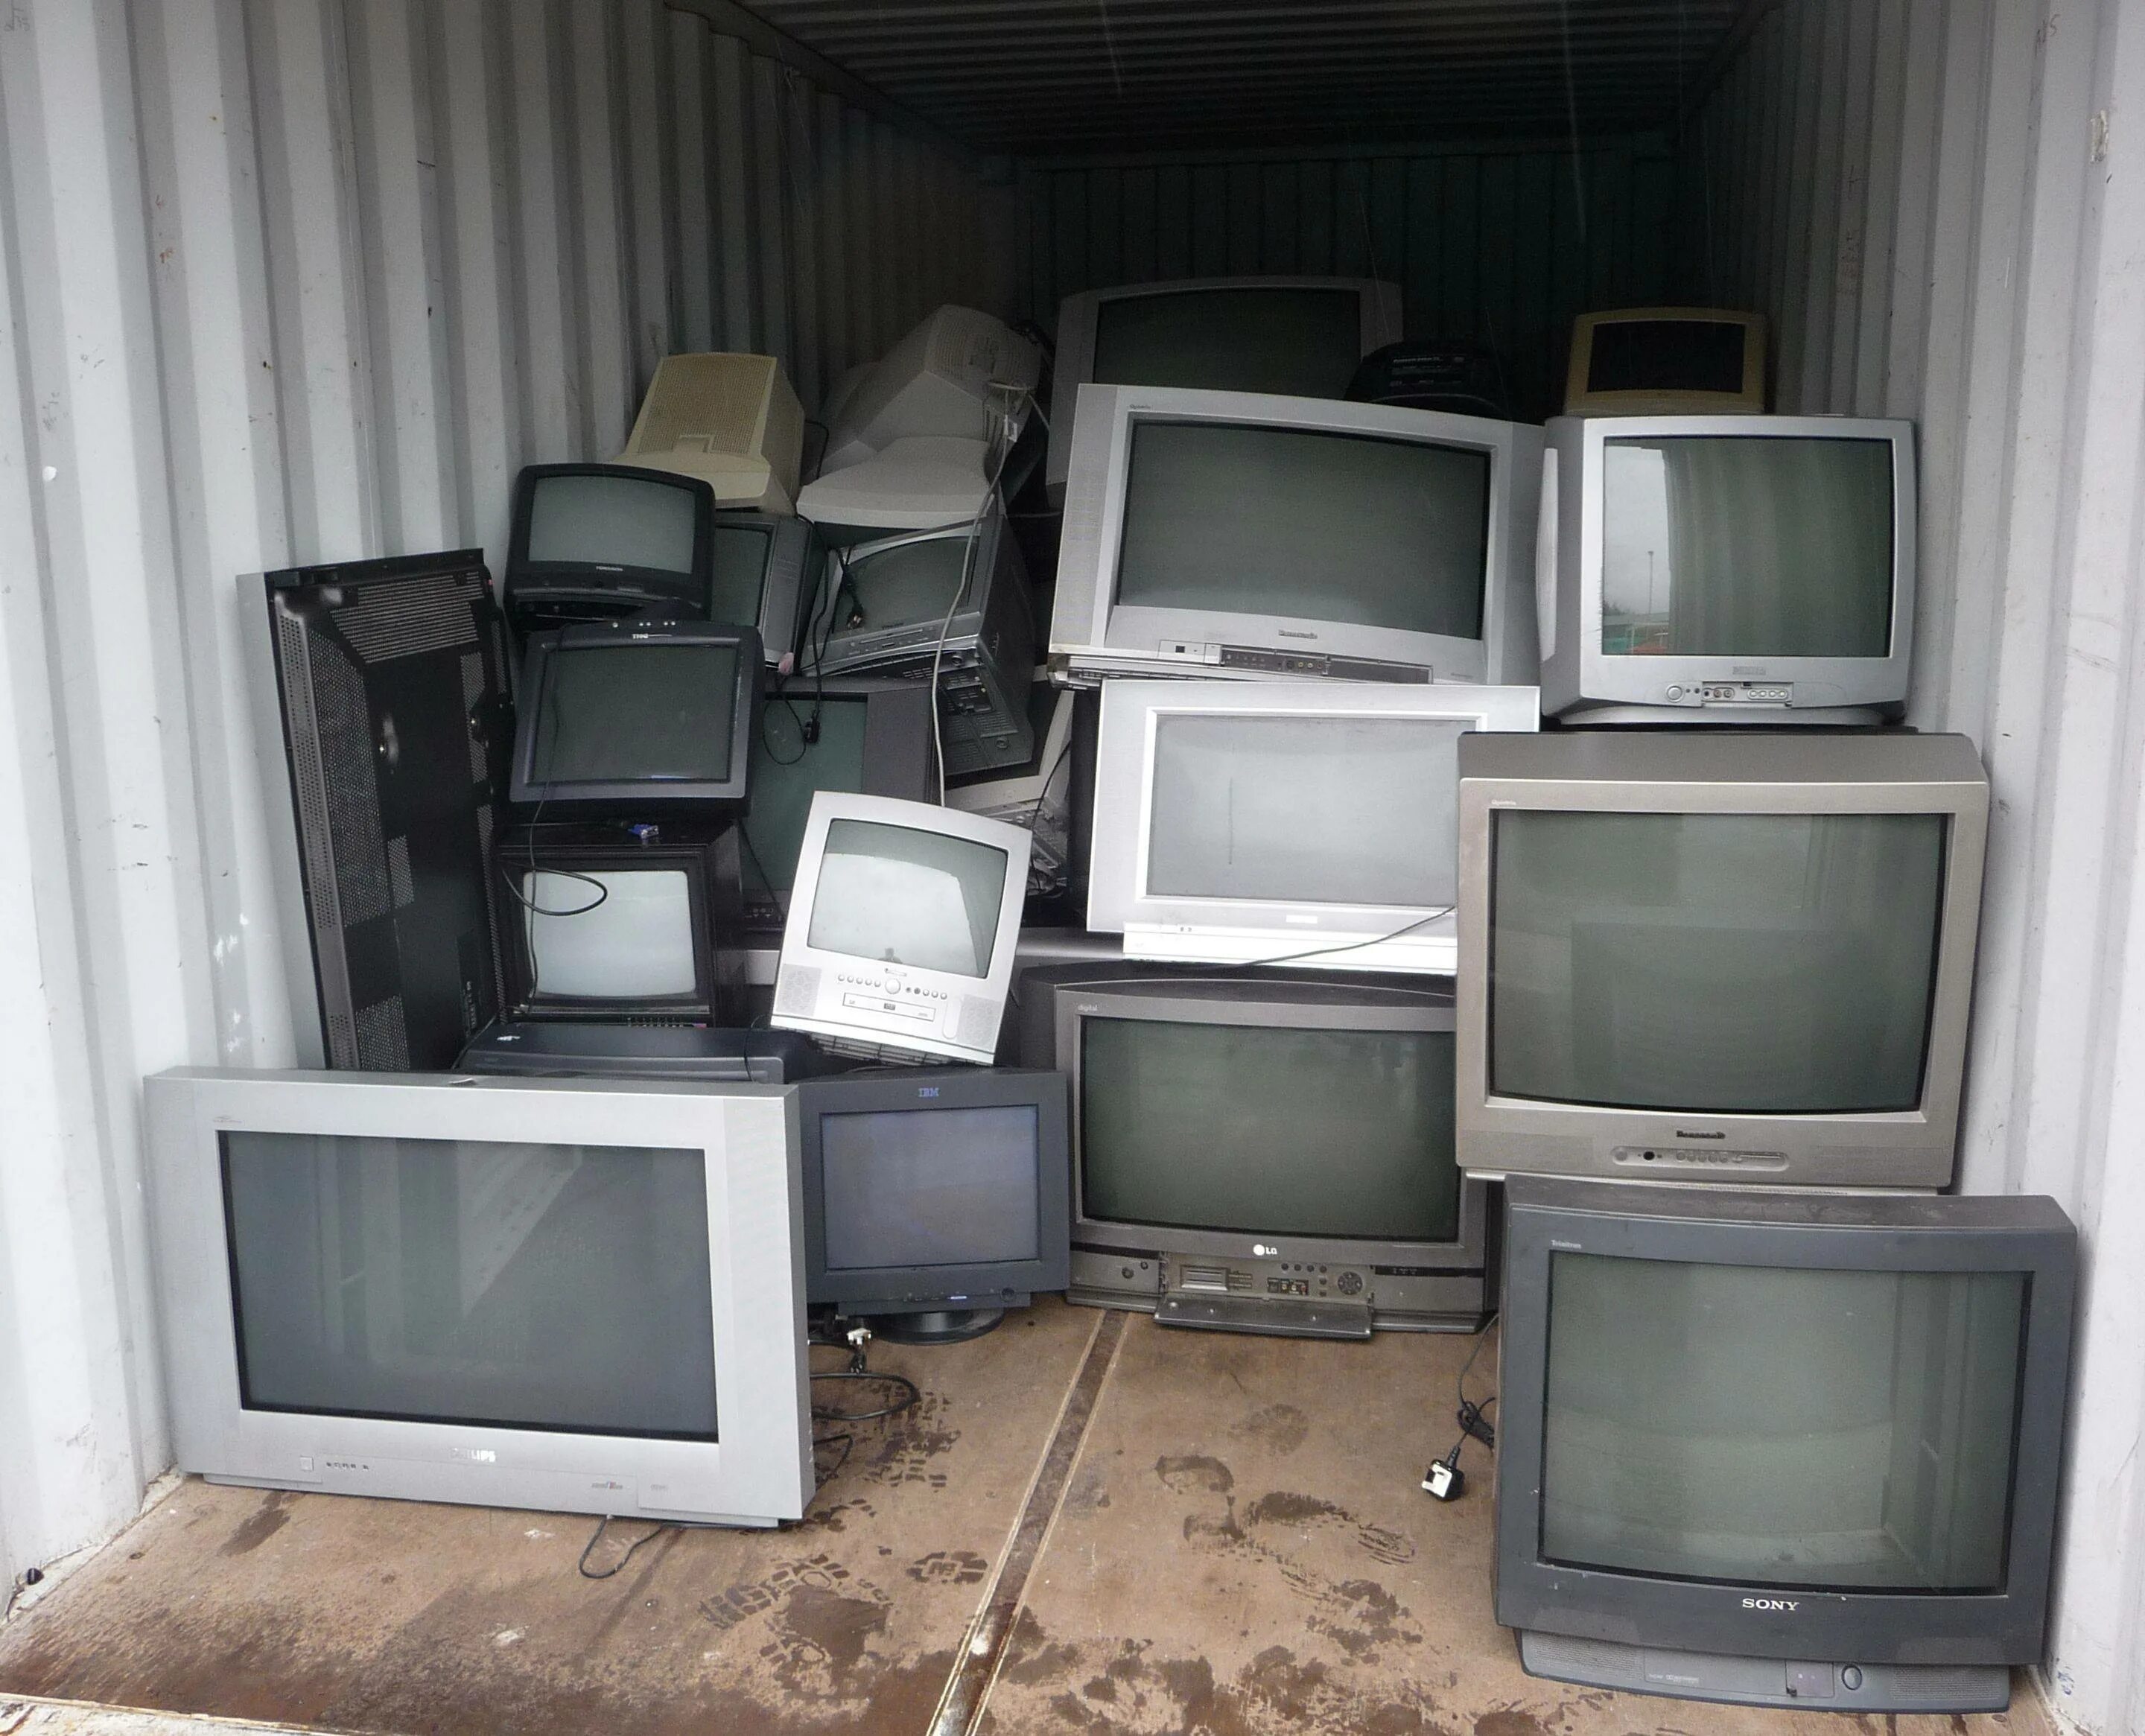 Старый телевизор 20 каналов. Старый телевизор. Телевизор с кинескопом. Запчасти для телевизоров. Утилизация телевизоров.